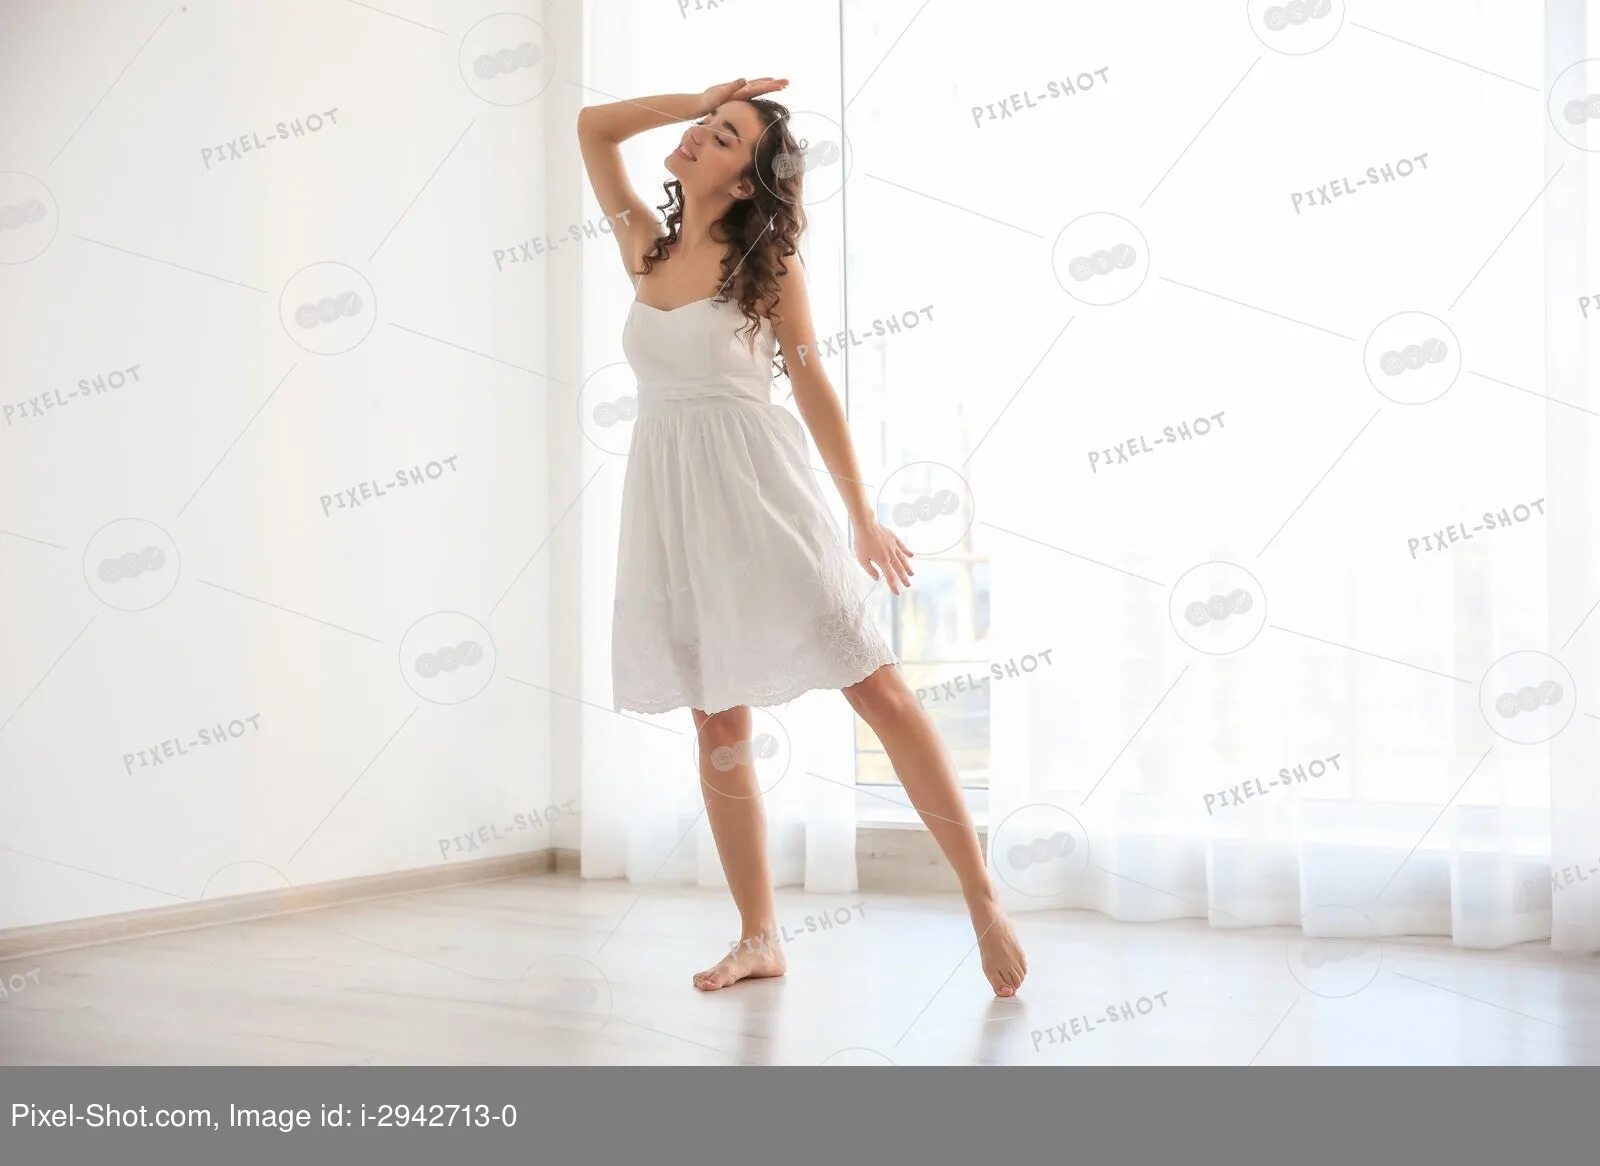 Девушка в белом платье танцует. Девочка в платье танцует дома. Девушка танцует в белом платье с ней парень. Фотосессия беременности черно-белый сарафан в студии.